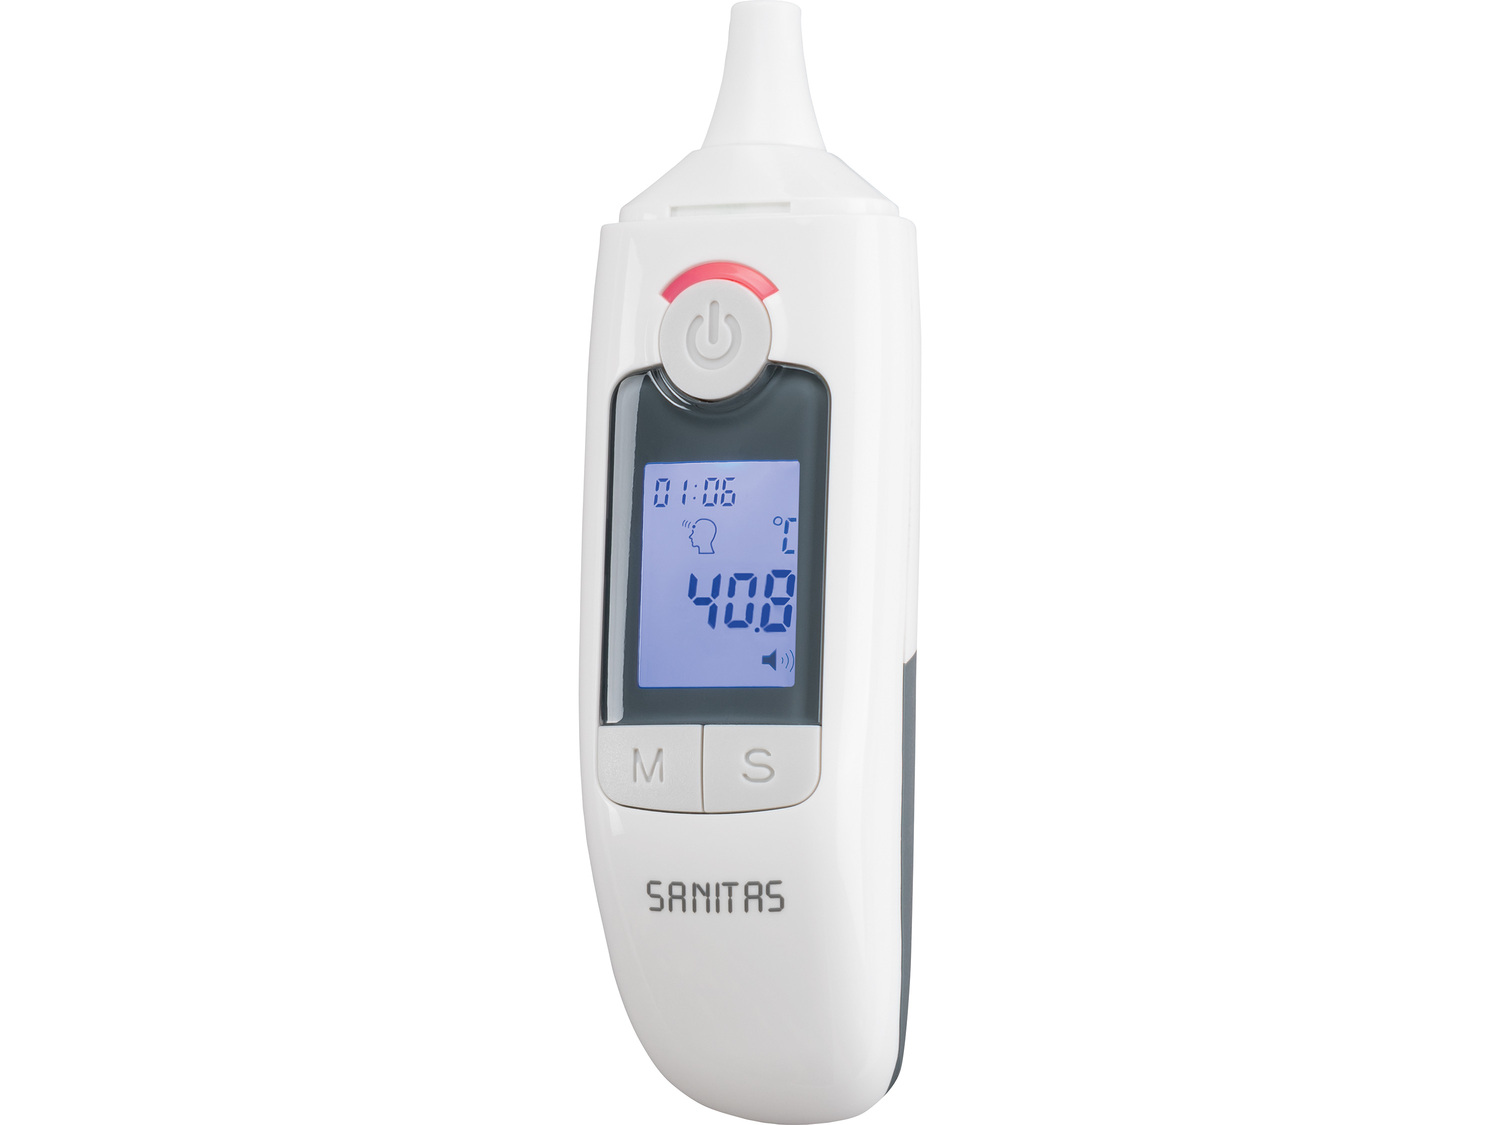 Termometr wielofunkcyjny Sanitas, cena 59,90 PLN 
- pomiar w uchu lub zbliżeniowo
- ...